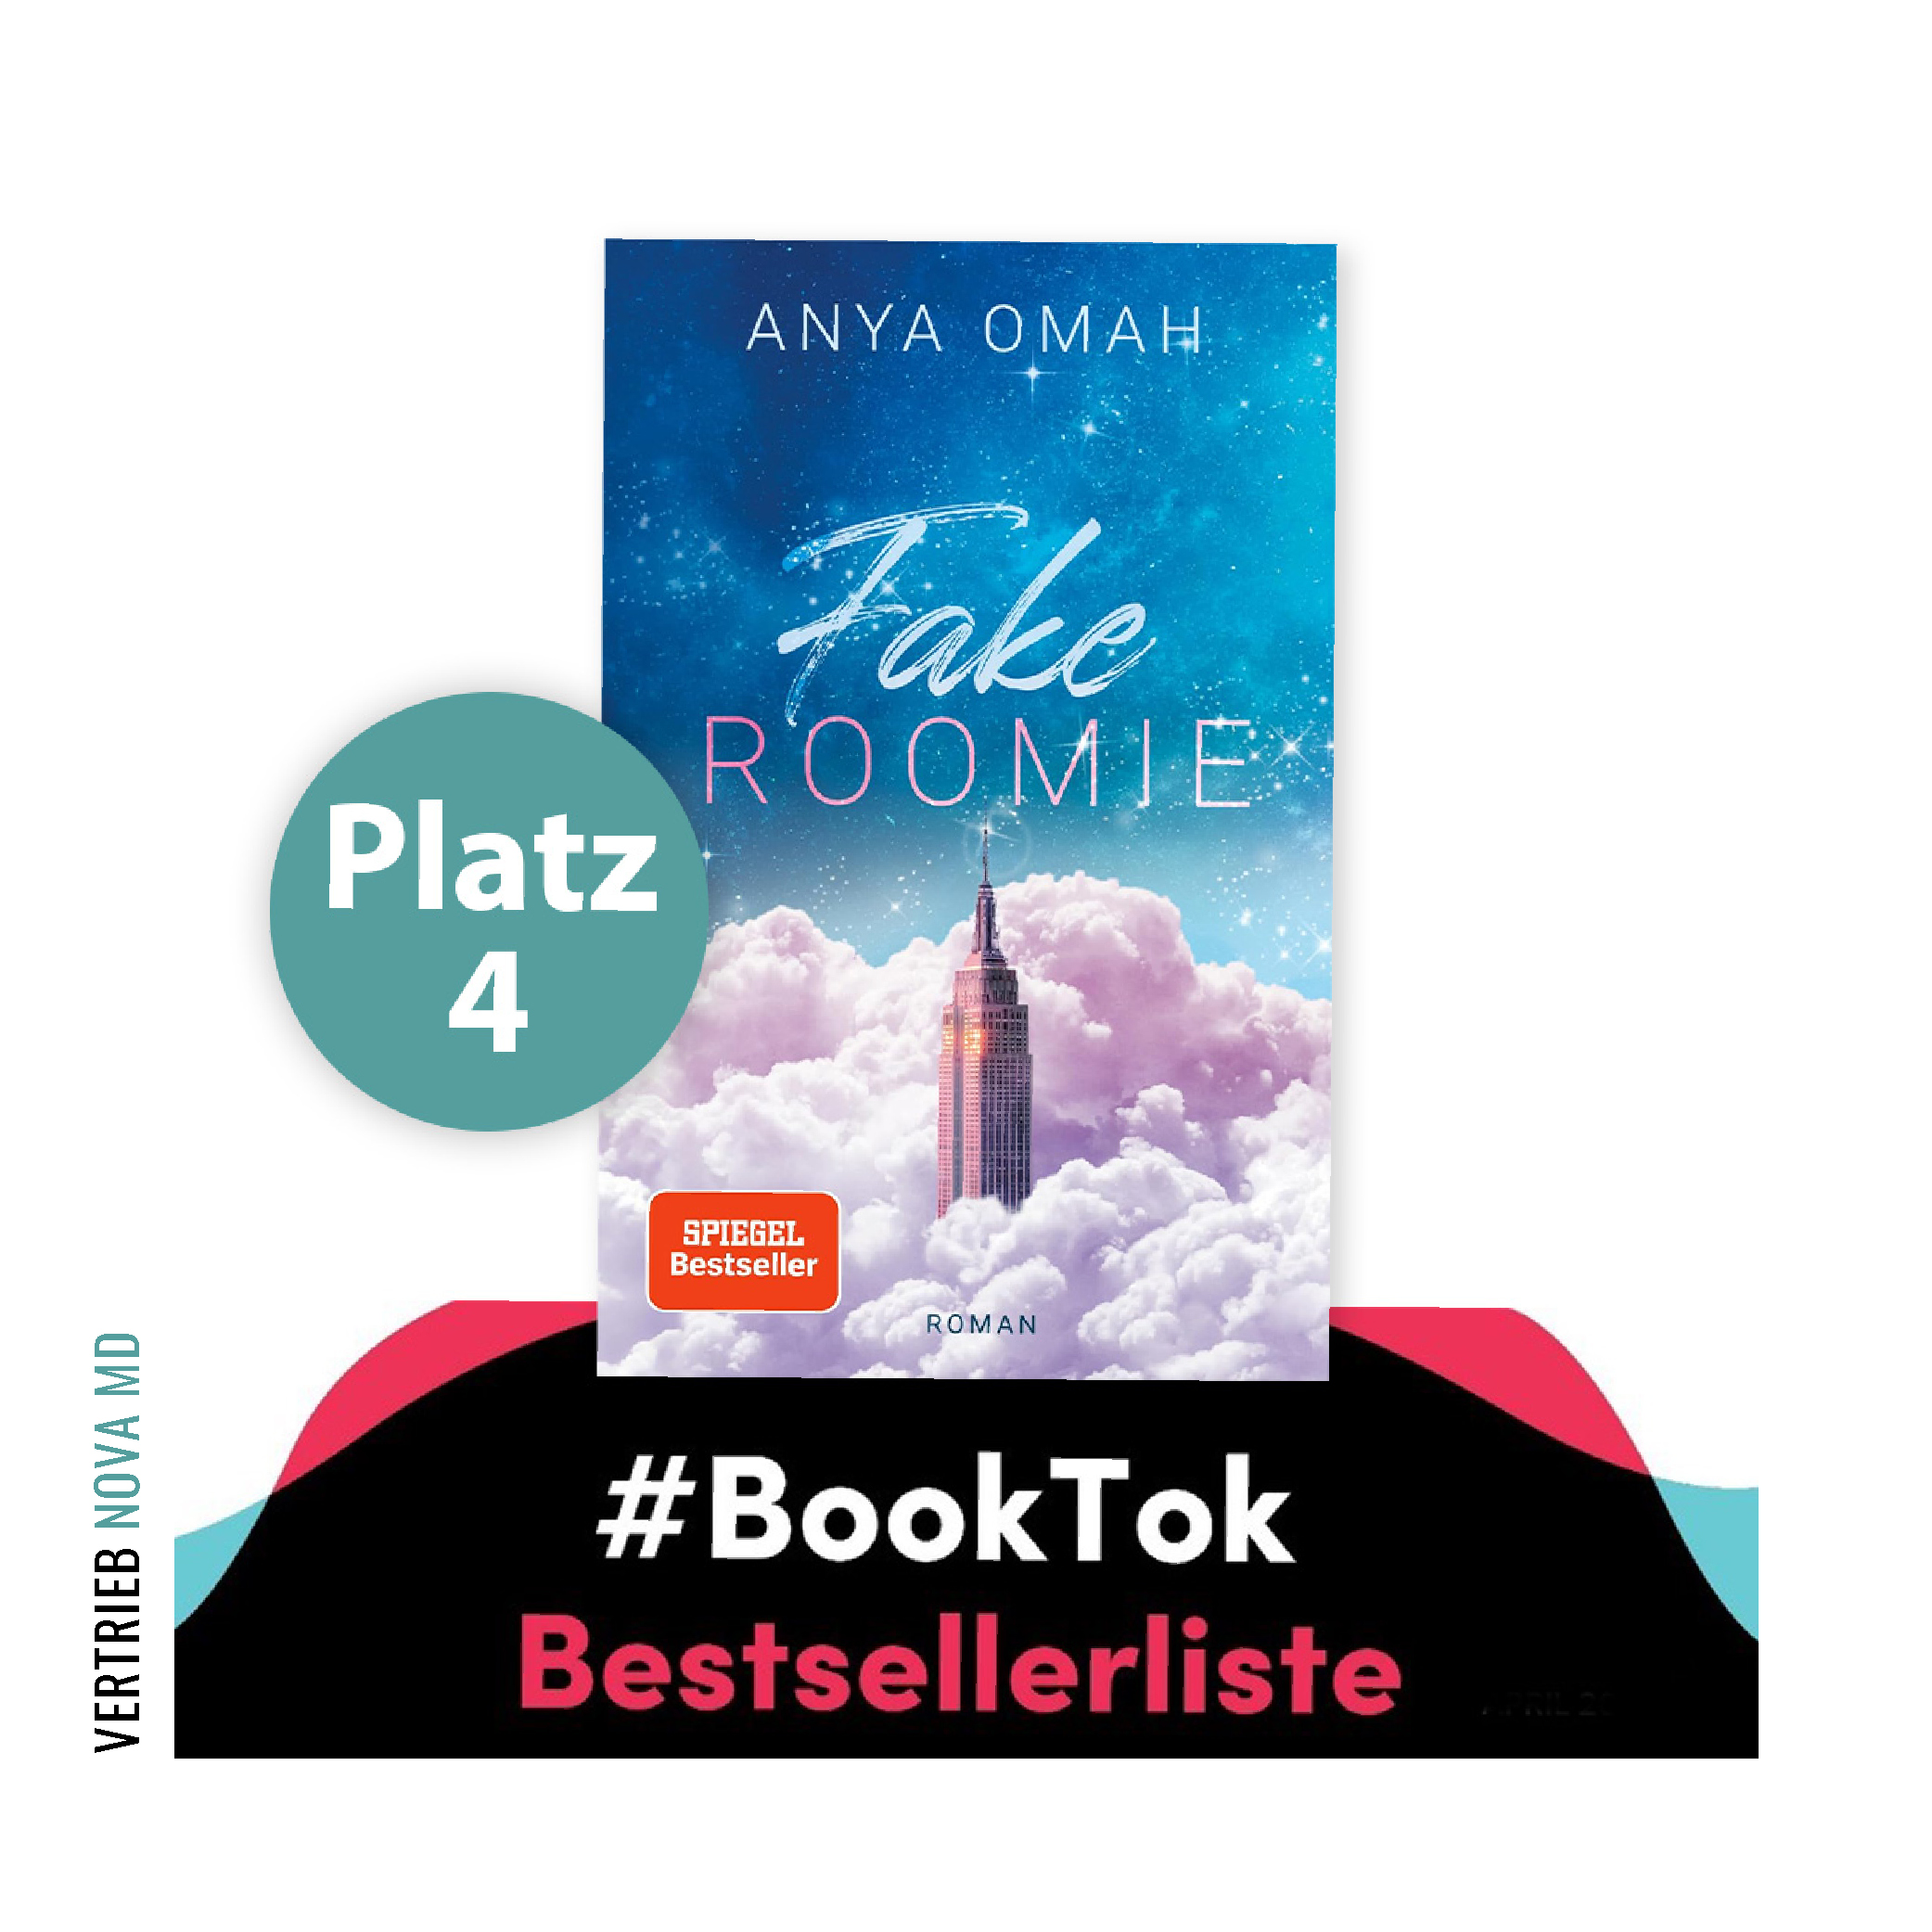 Buchcover des Buches "Fake Roomie" von Anya Omah mit Verweis auf Platzierung vierter Platz  auf der Booktok Bestsellerliste